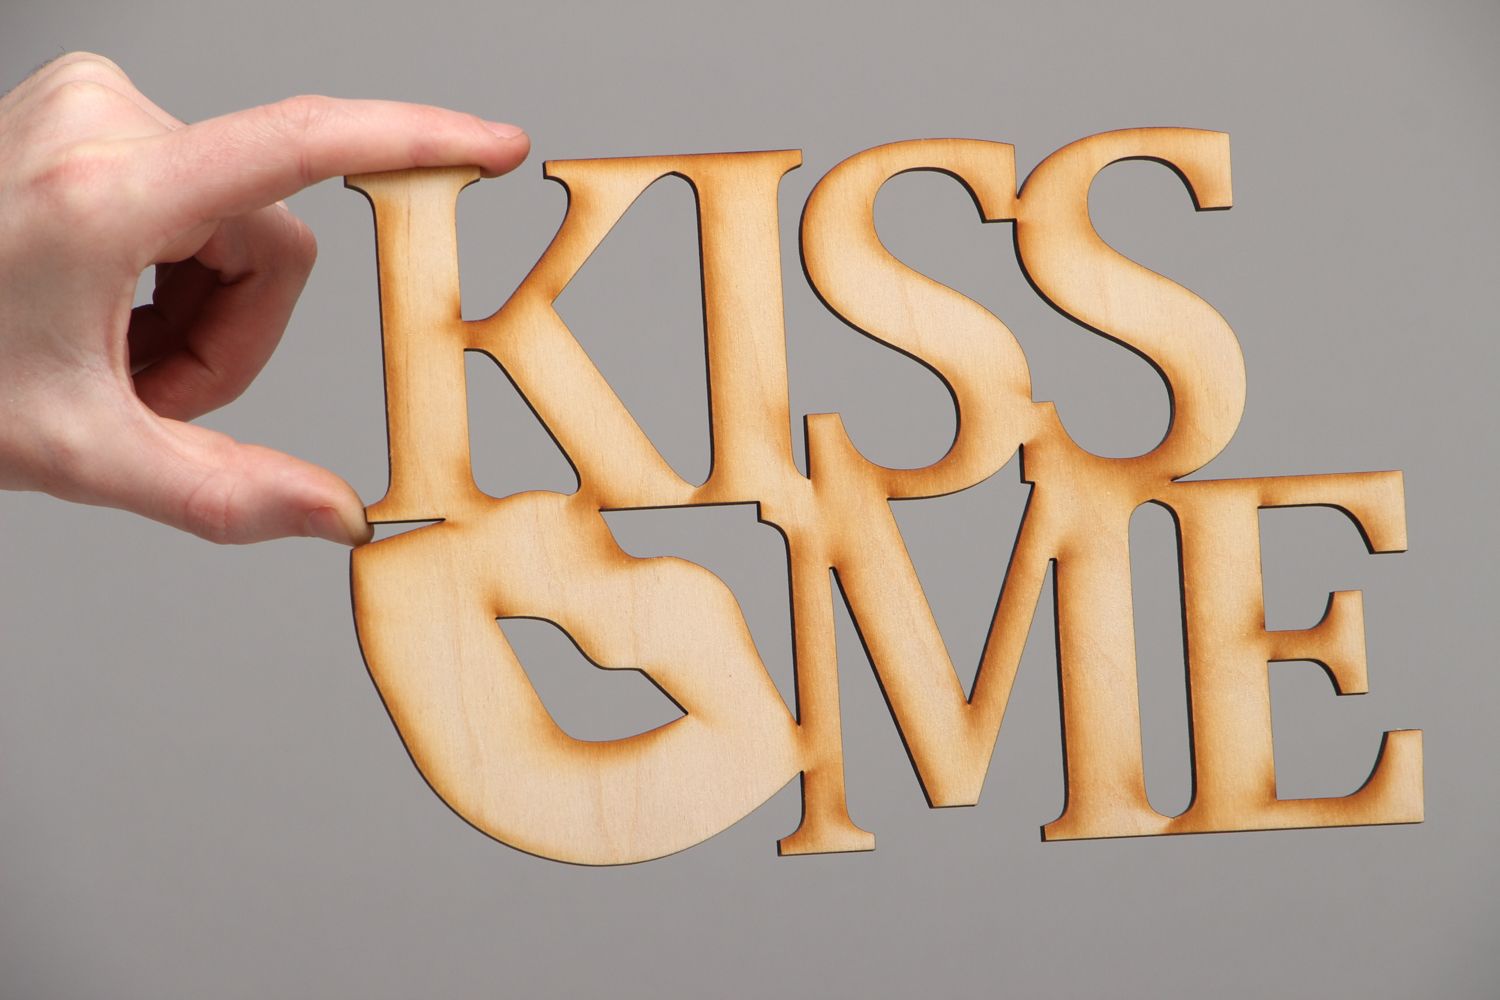 Vorbereitete Materialien handmade für Kunstarbeit Kiss Me foto 3